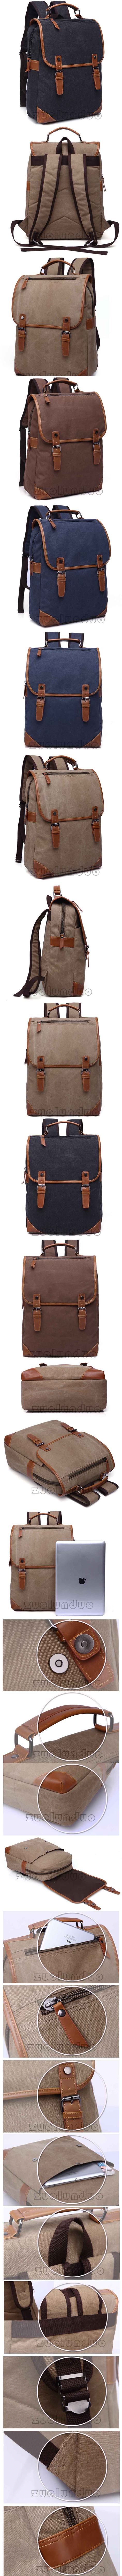 jual tas ransel pria keren dari bahan kanvas dilengkapi dengan slot laptop muat hingga 13" , klik dan pesan online tas ransel pria terlengkap hanya di pfp store